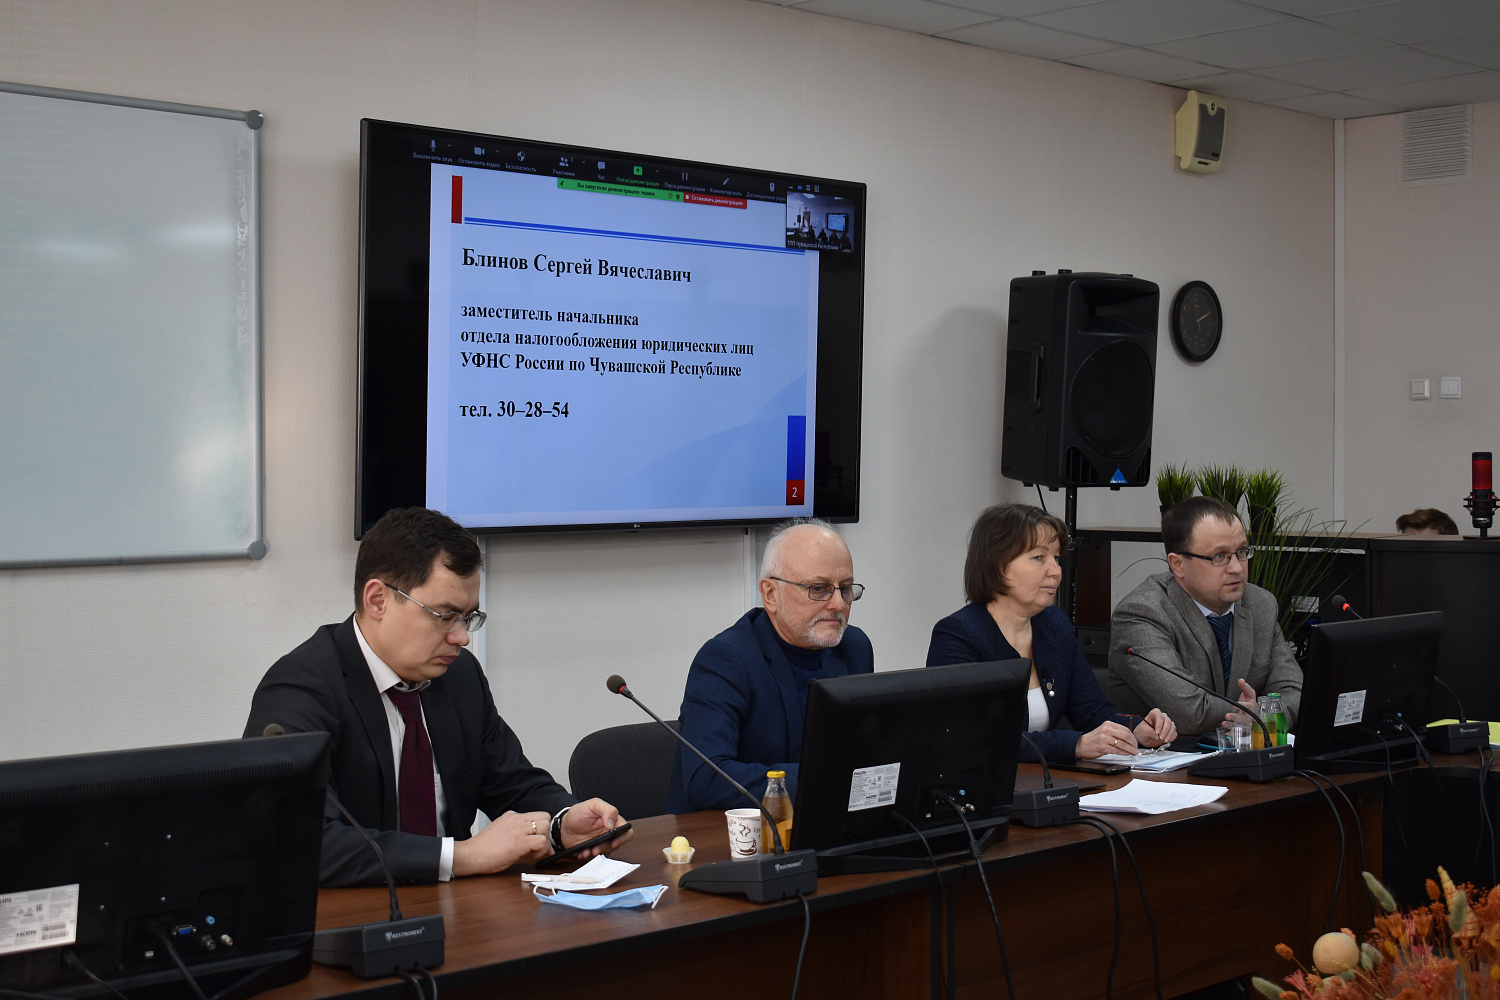 17 февраля 2022 г. в Торгово-промышленной палате Чувашской Республики состоялся Круглый стол совместно с Управлением Федеральной налоговой службы по Чувашской Республике.